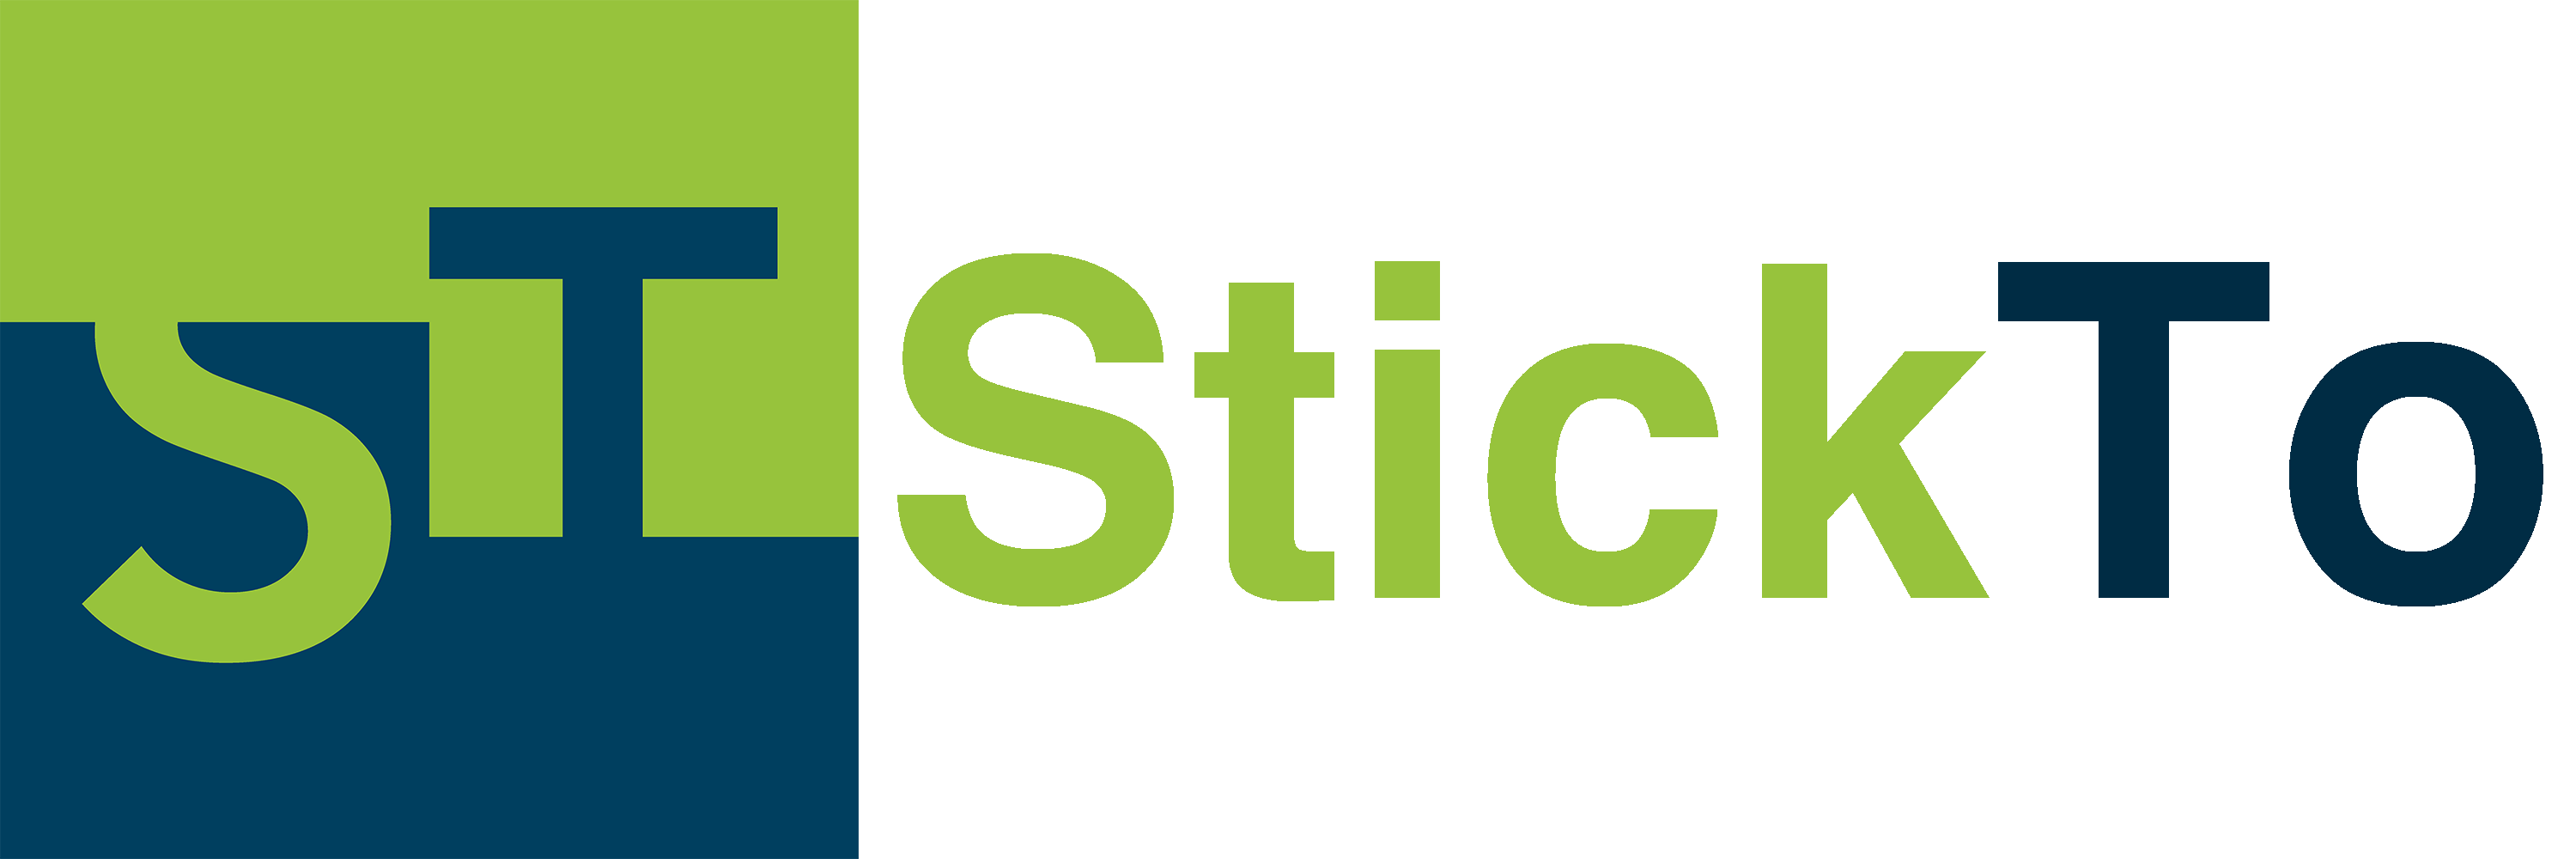 StickTo - Netzwerk für Berufsorientierungsphase